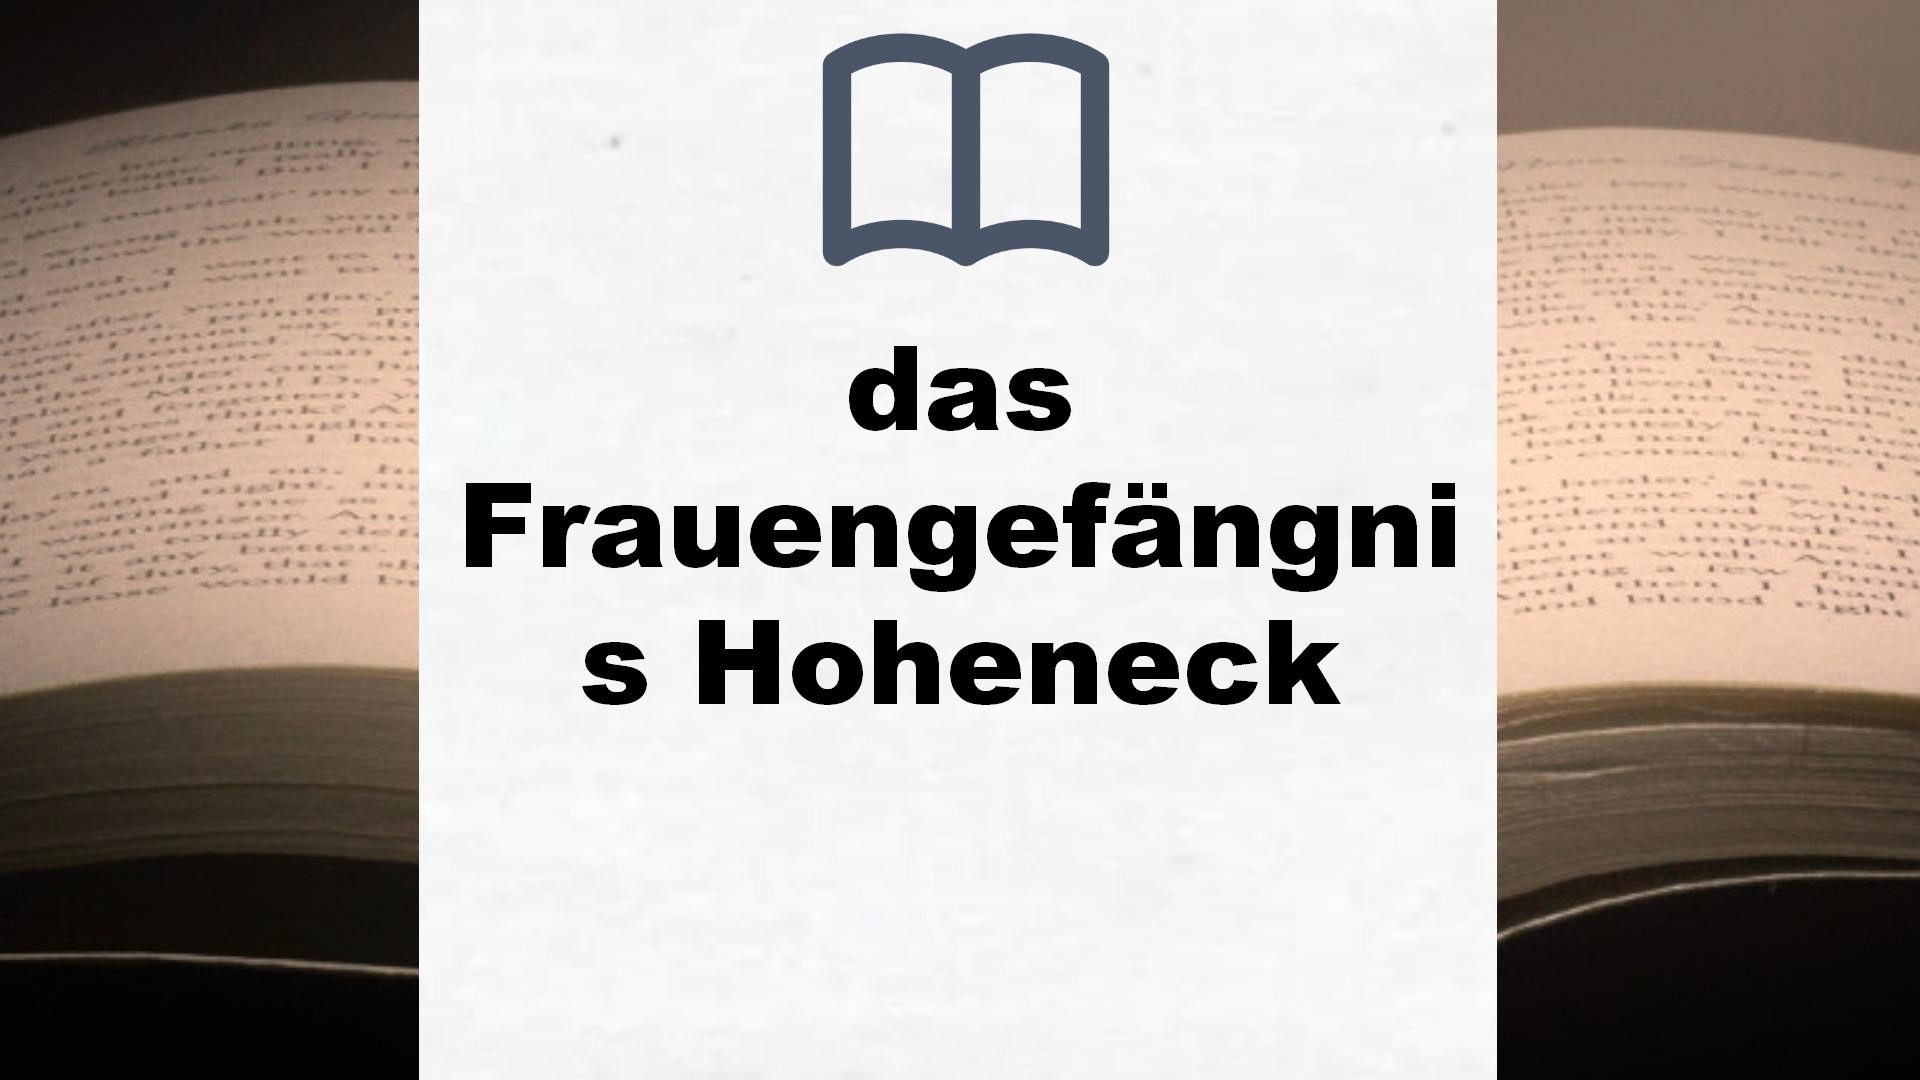 Bücher über das Frauengefängnis Hoheneck